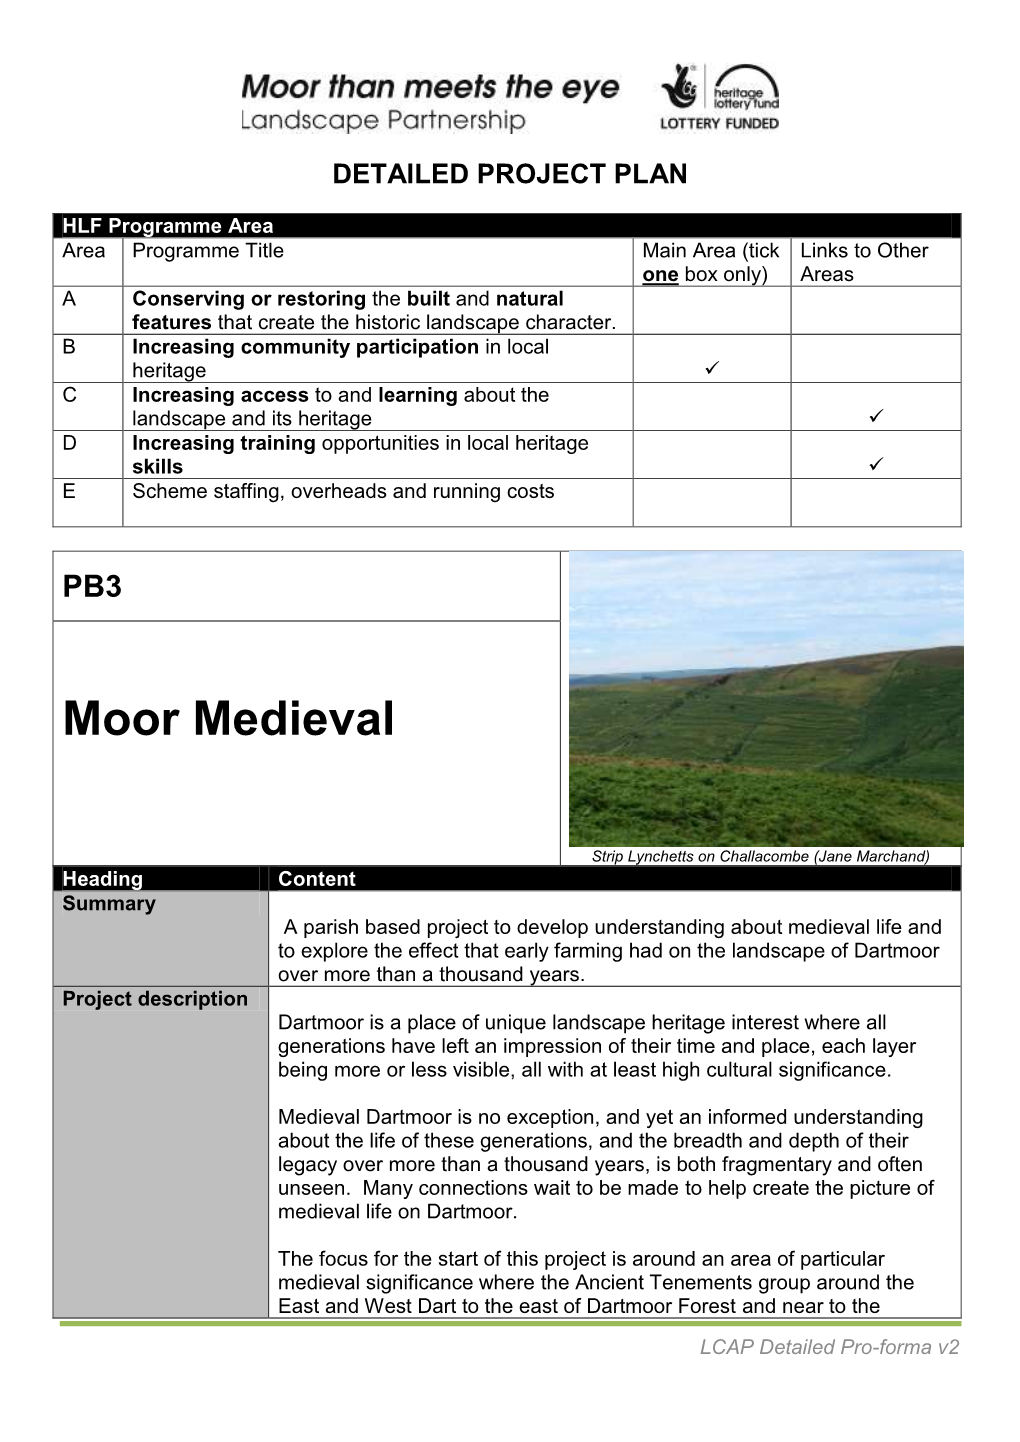 Moor Medieval Project Proforma